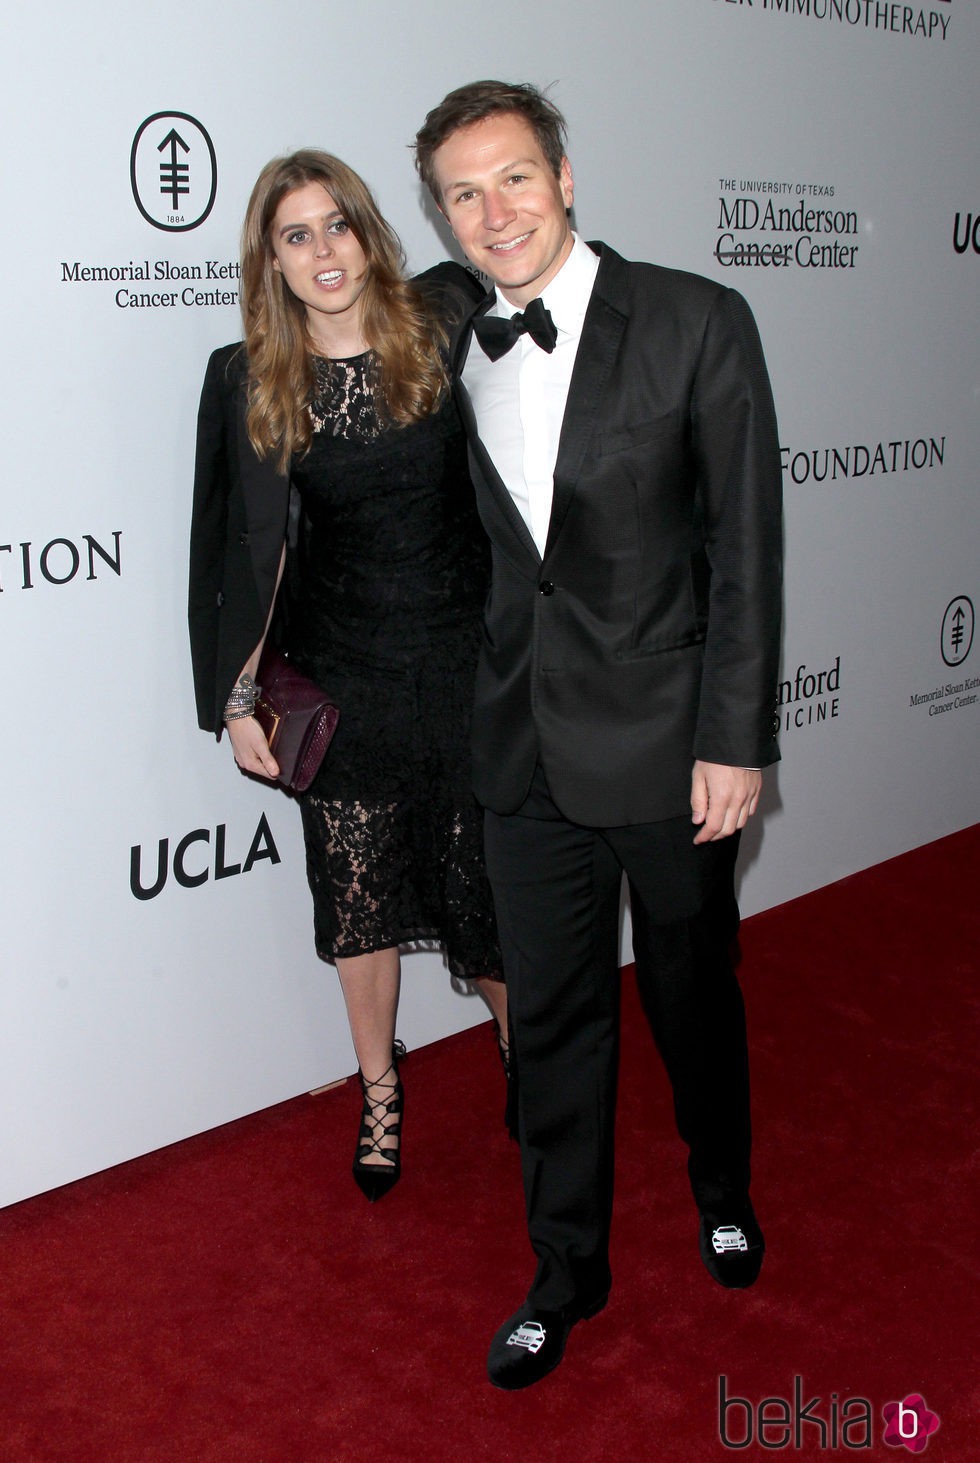 La Princesa Beatriz de York y Dave Clark en la gala benéfica de la Fundación Parker en Los Ángeles